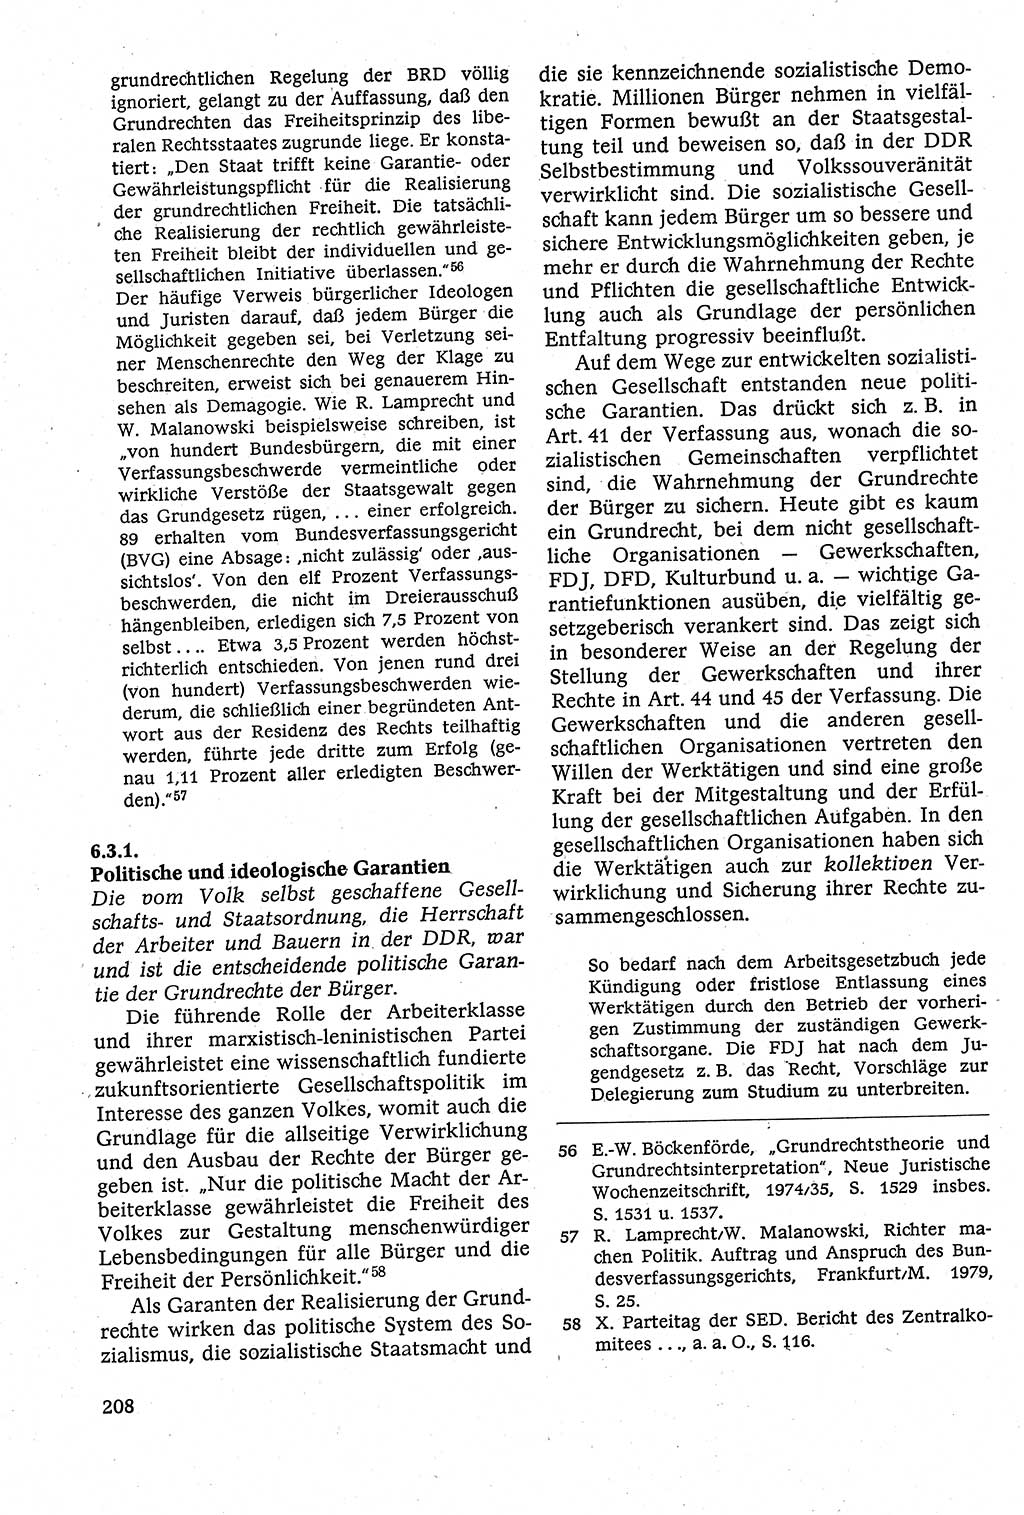 Staatsrecht der DDR [Deutsche Demokratische Republik (DDR)], Lehrbuch 1984, Seite 208 (St.-R. DDR Lb. 1984, S. 208)